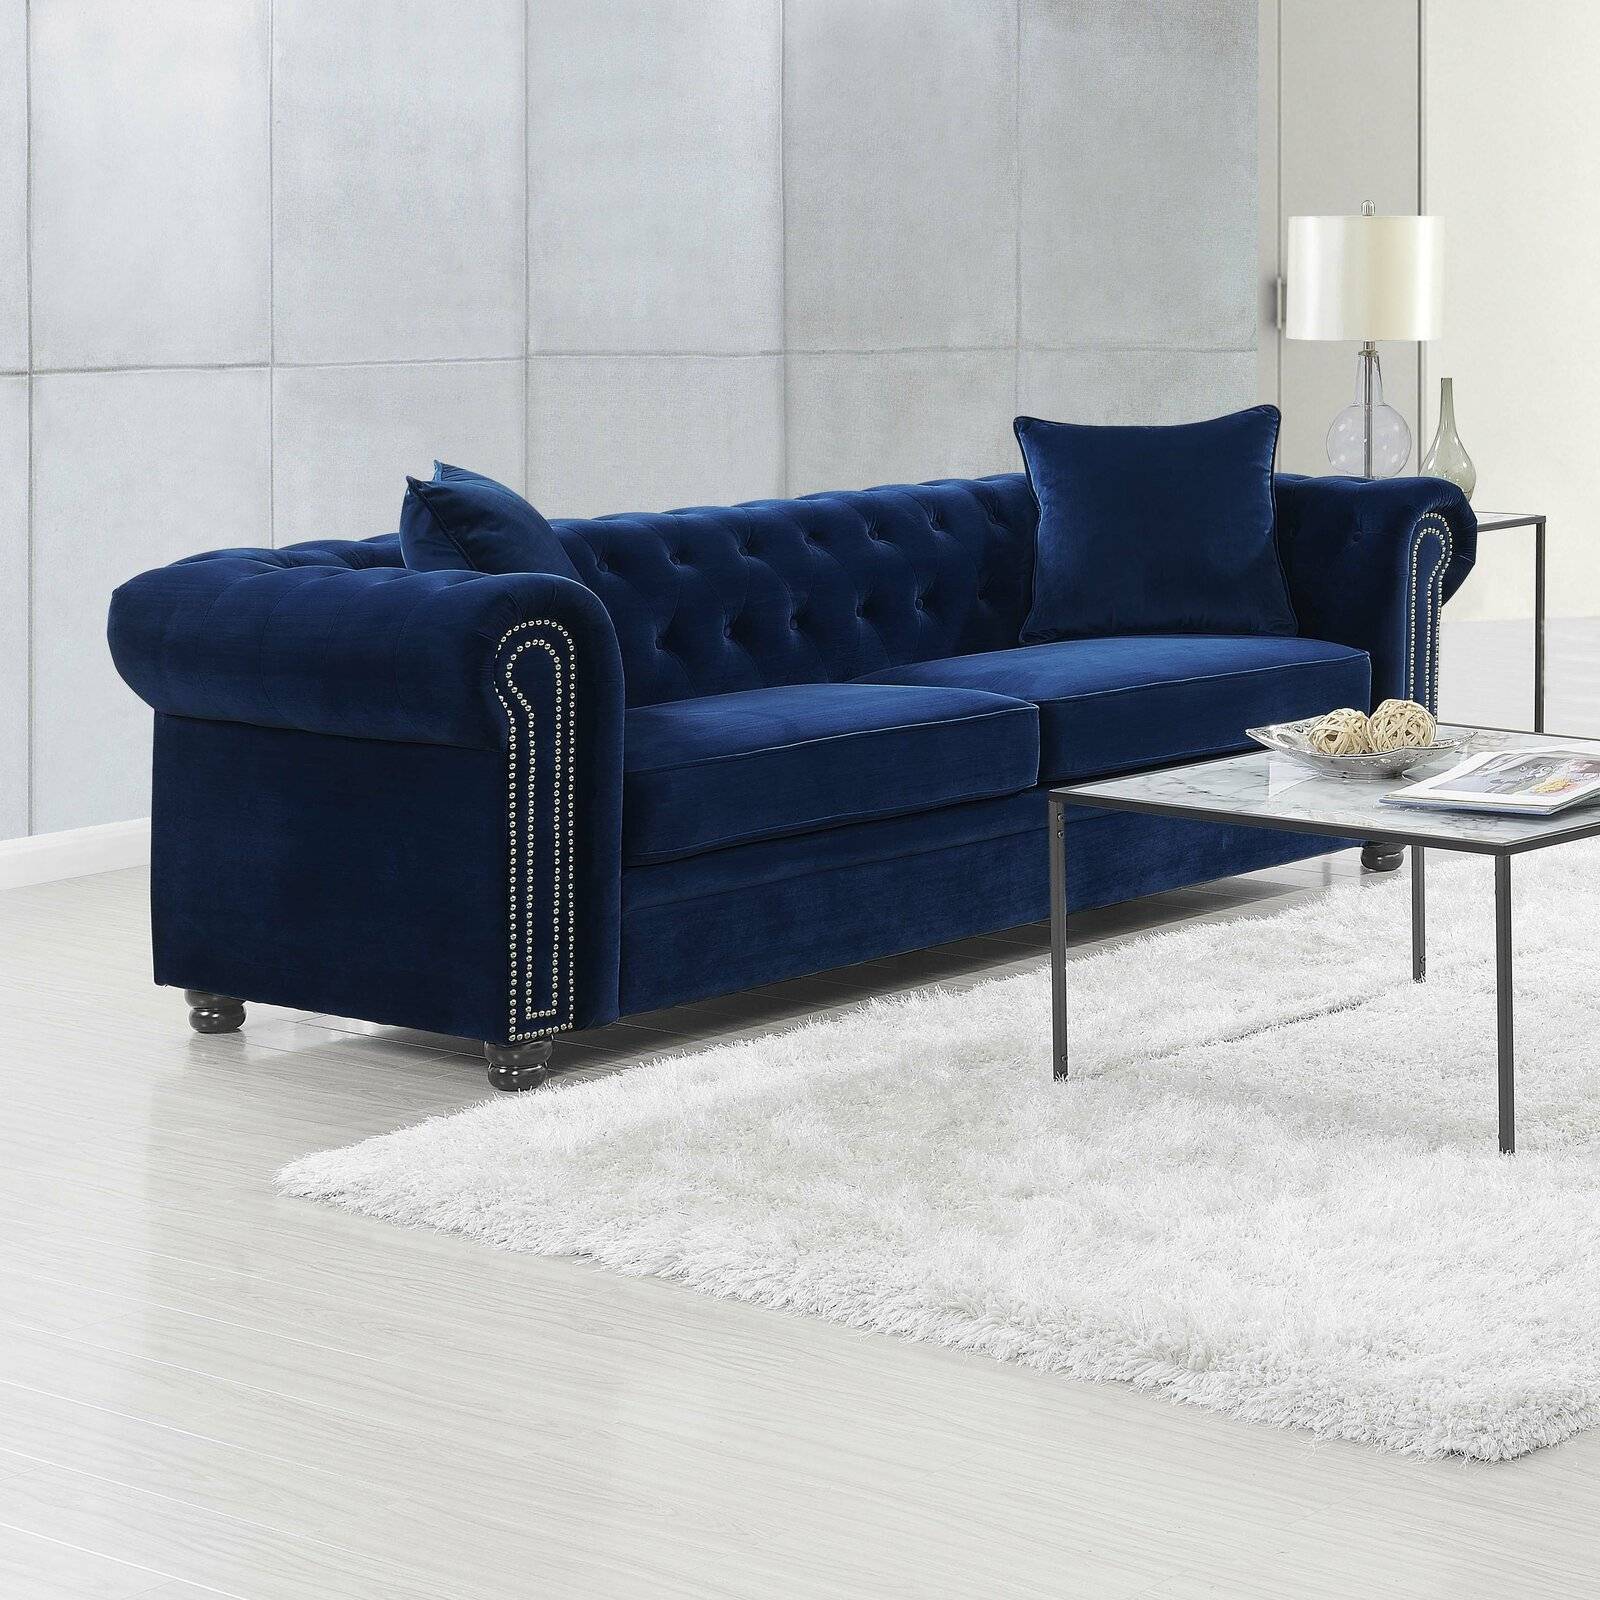 Luxurious Chesterfiled sofa (from Wayfair)